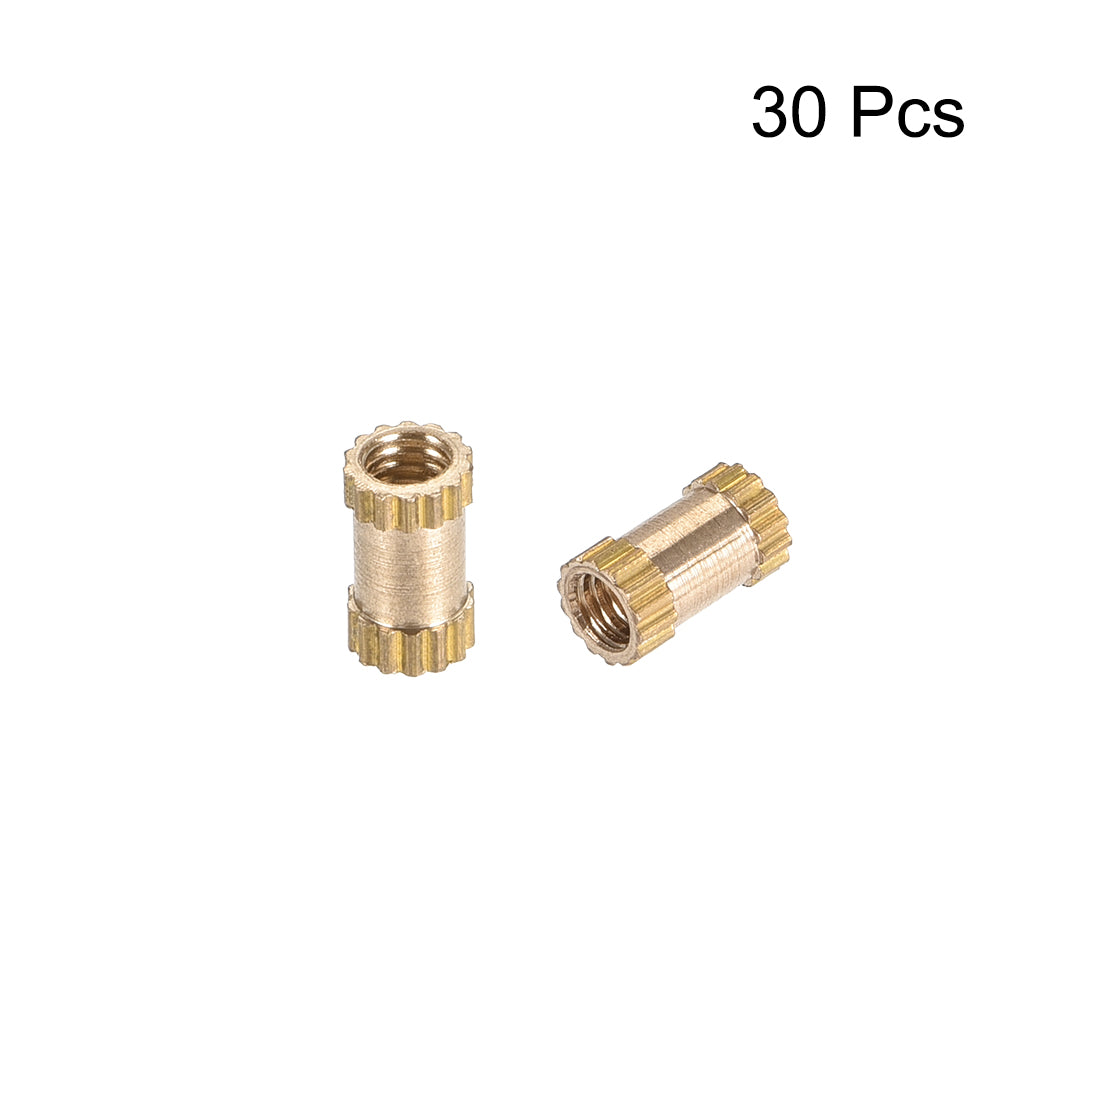 uxcell Uxcell Knurled Insert Nuts, M2.5 x 6mm(L) x 3.5mm(OD) Female Thread Brass Embedment Assortment Kit, 30 Pcs